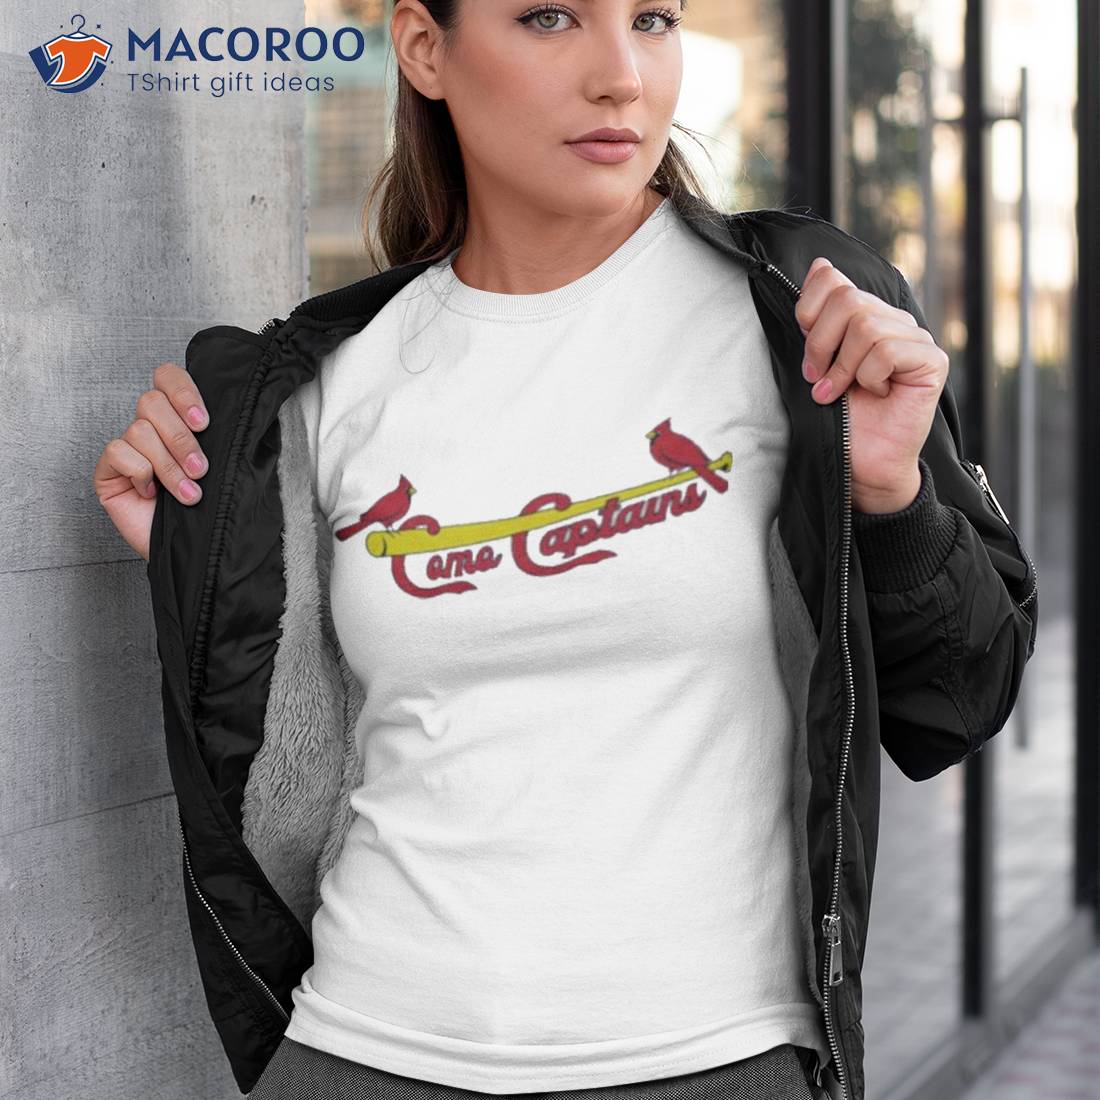 Official Women's St. Louis Cardinals Gear, Womens Cardinals